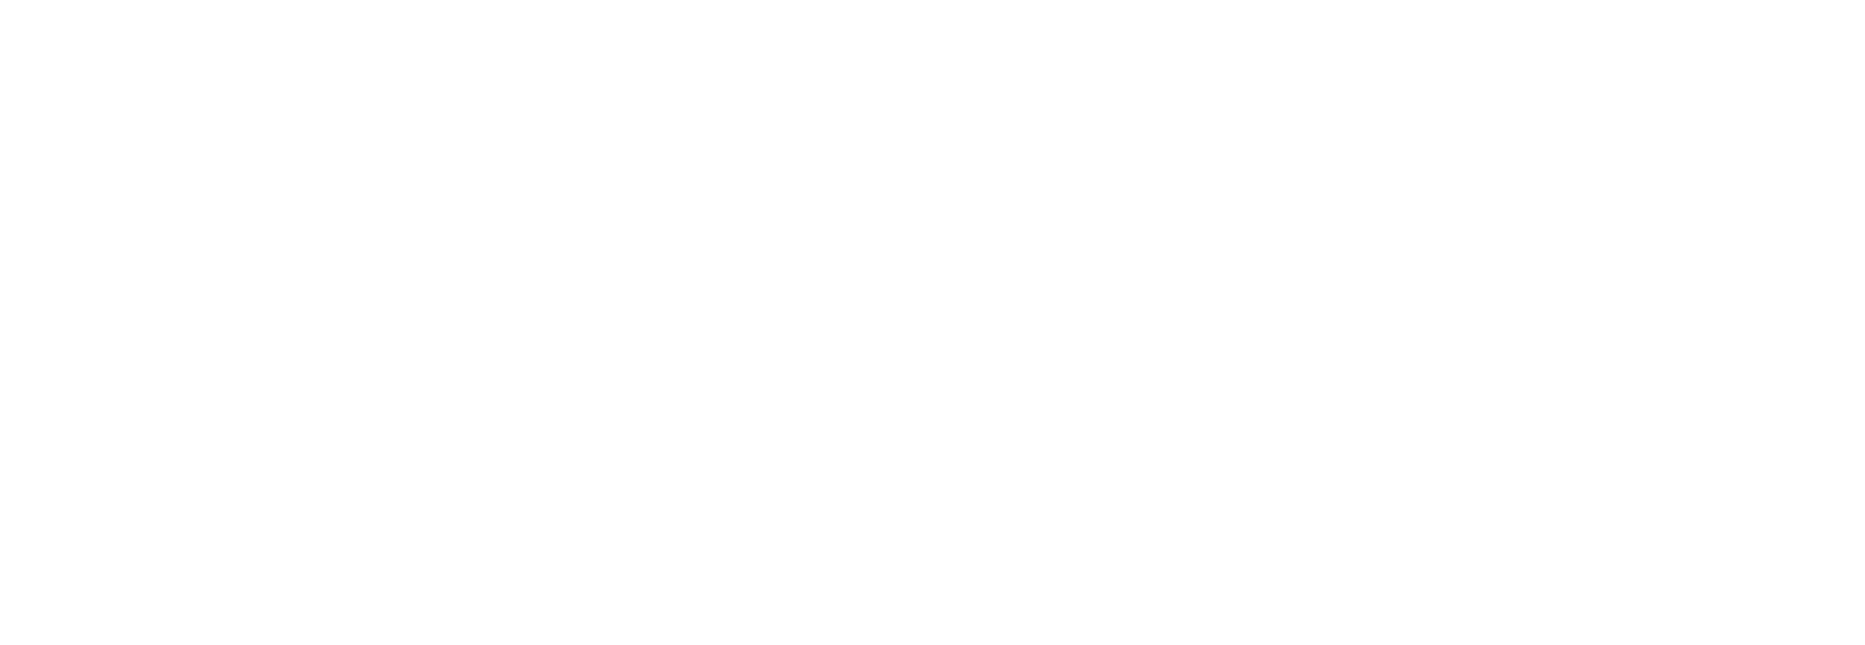 ceci est le logo du rrx